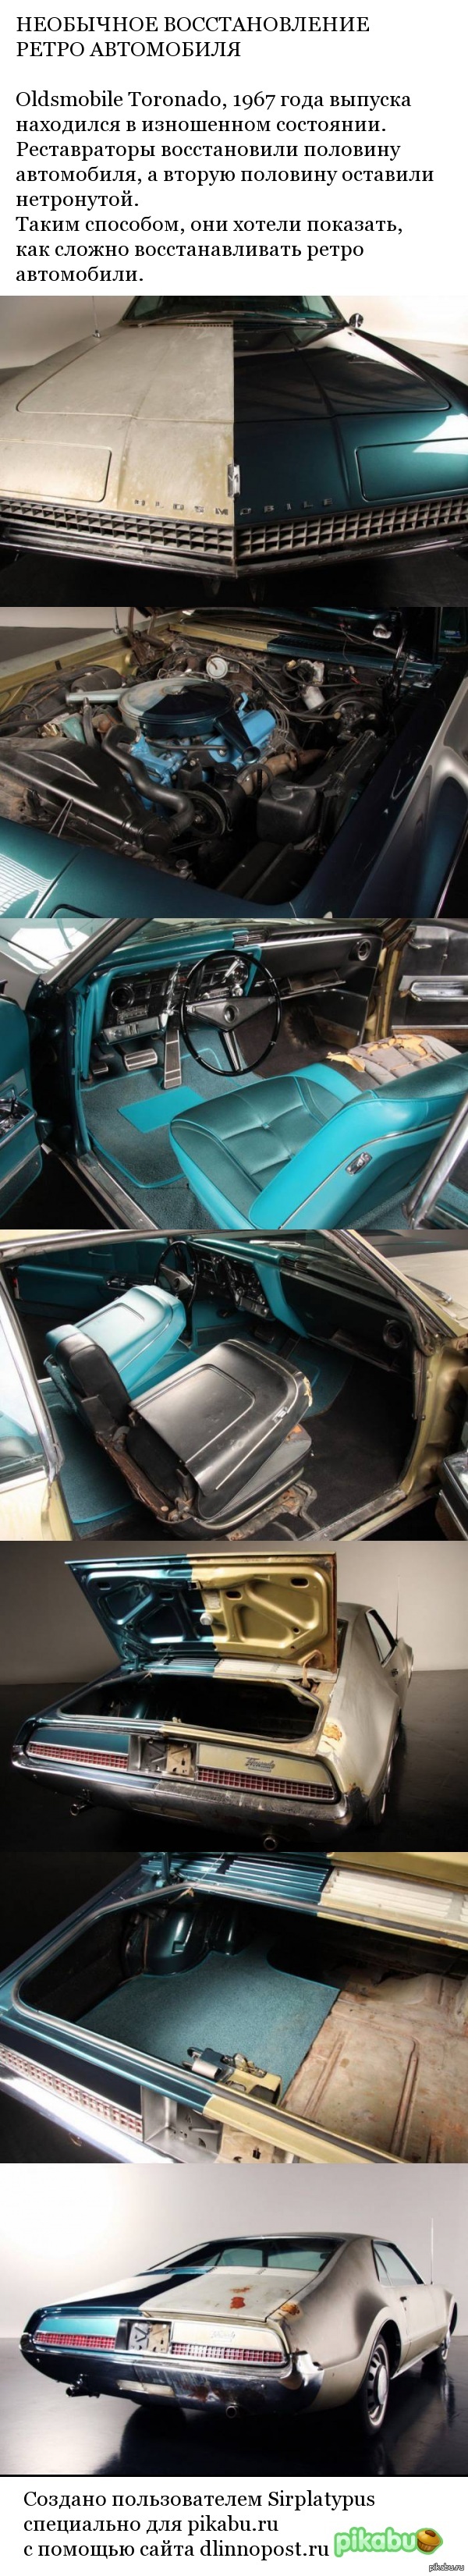   Oldsmobile Toronado 1967  